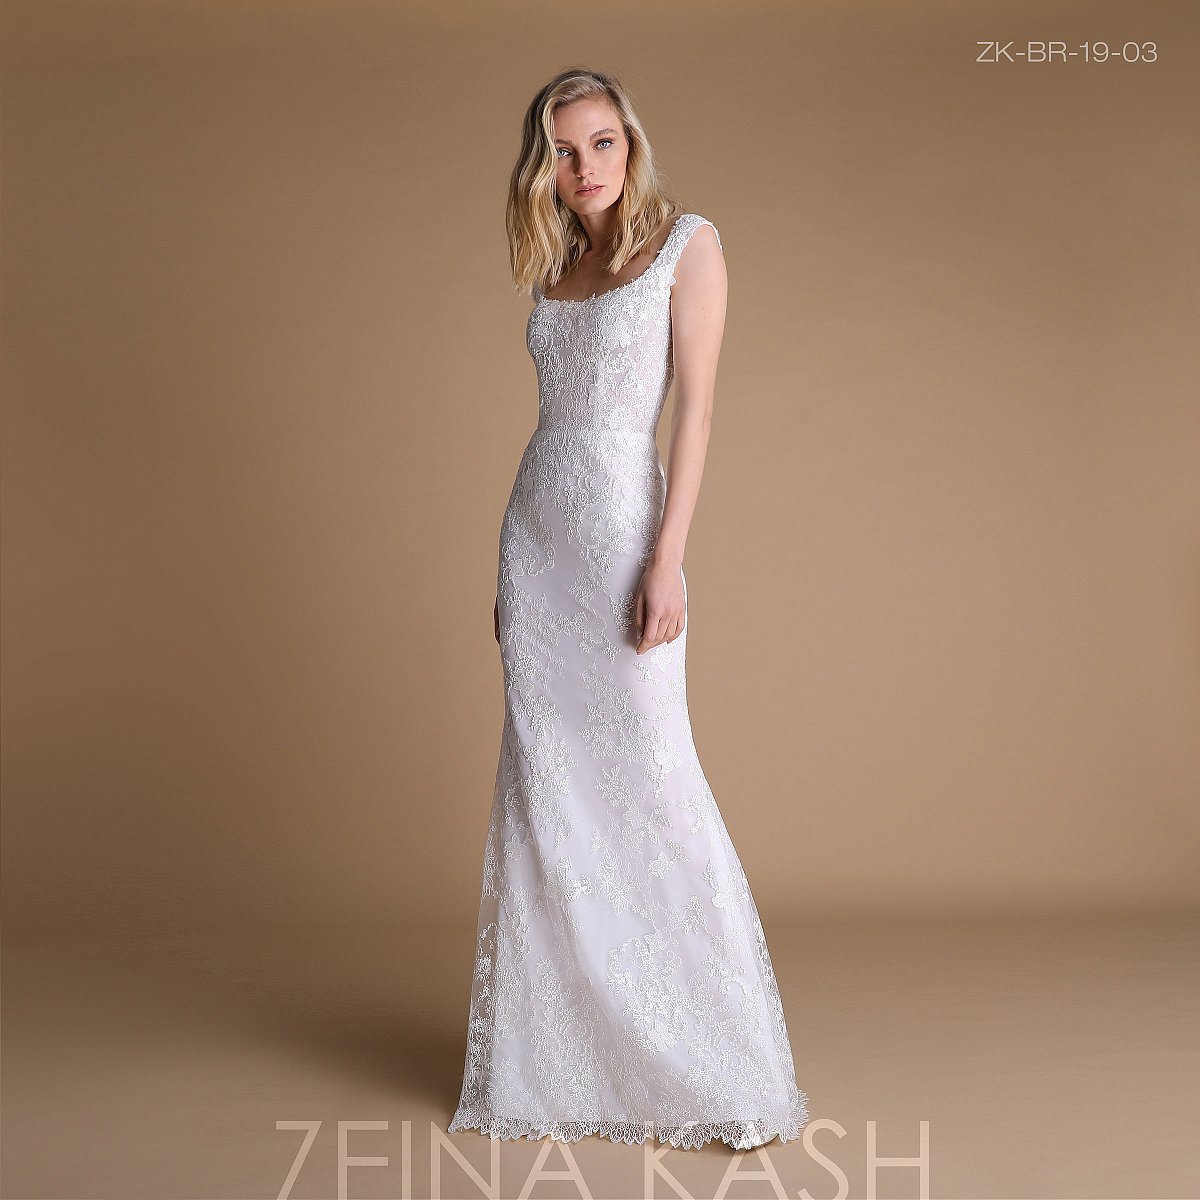 زينة كاش [Zeina Kash] مجموعة 2019 - فساتين أعراس - 1